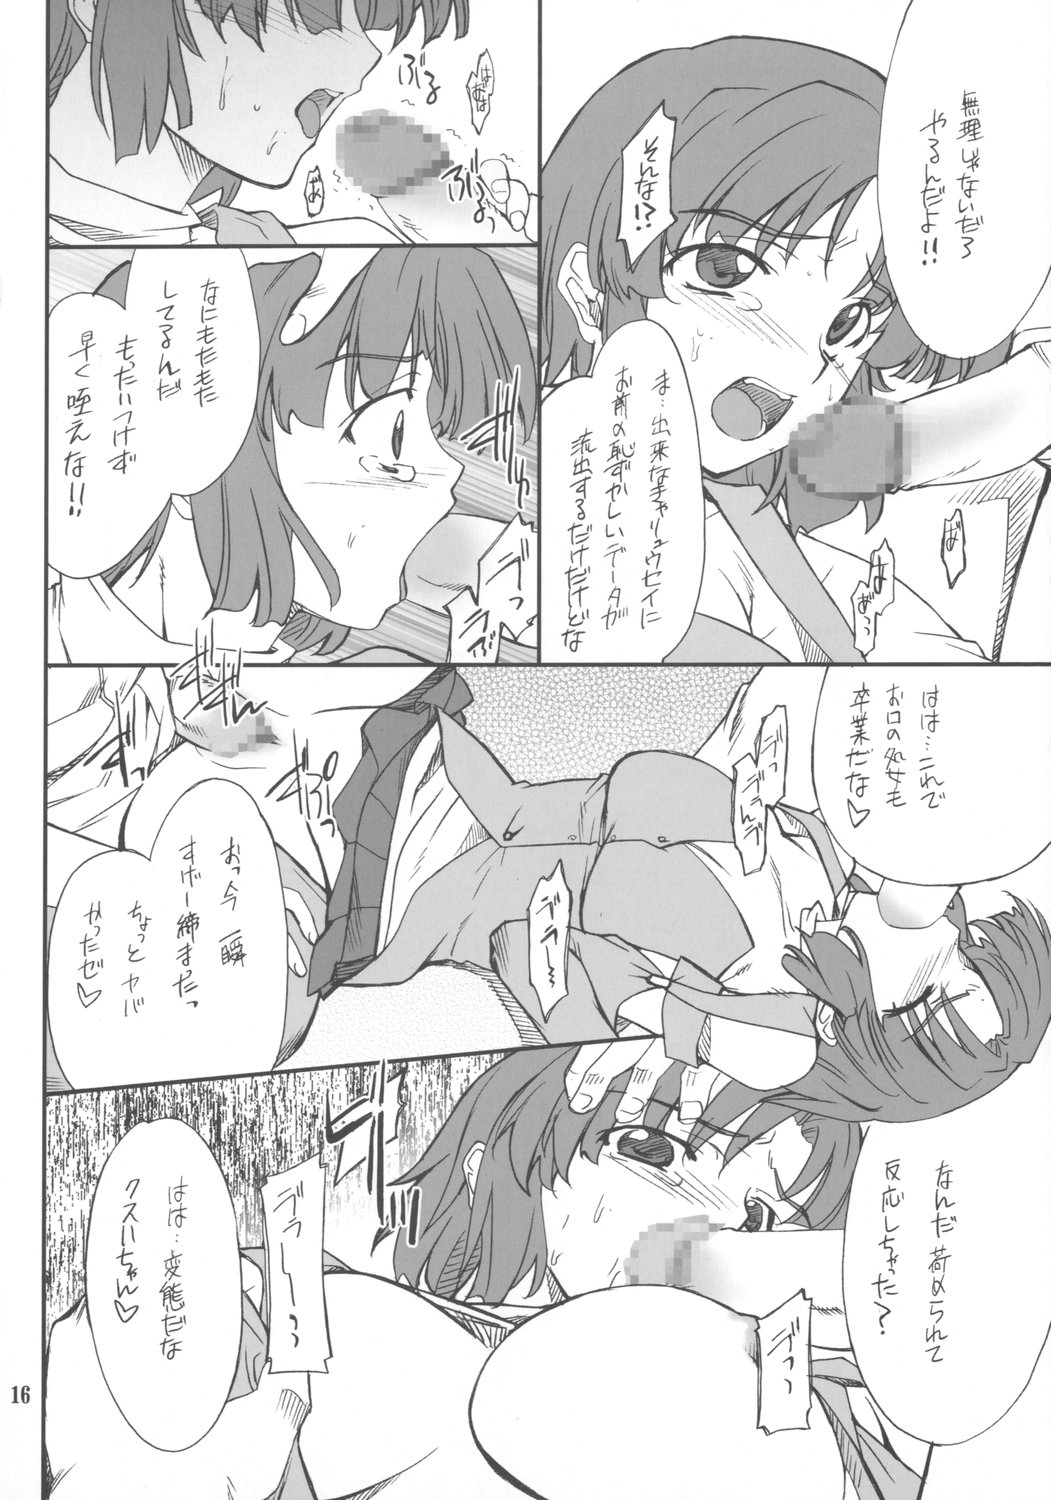 (SC34) [P-Forest (Hozumi Takashi)] INTERMISSION_if code_04: KUSUHA (Super Robot Wars OG: Original Generations) page 15 full